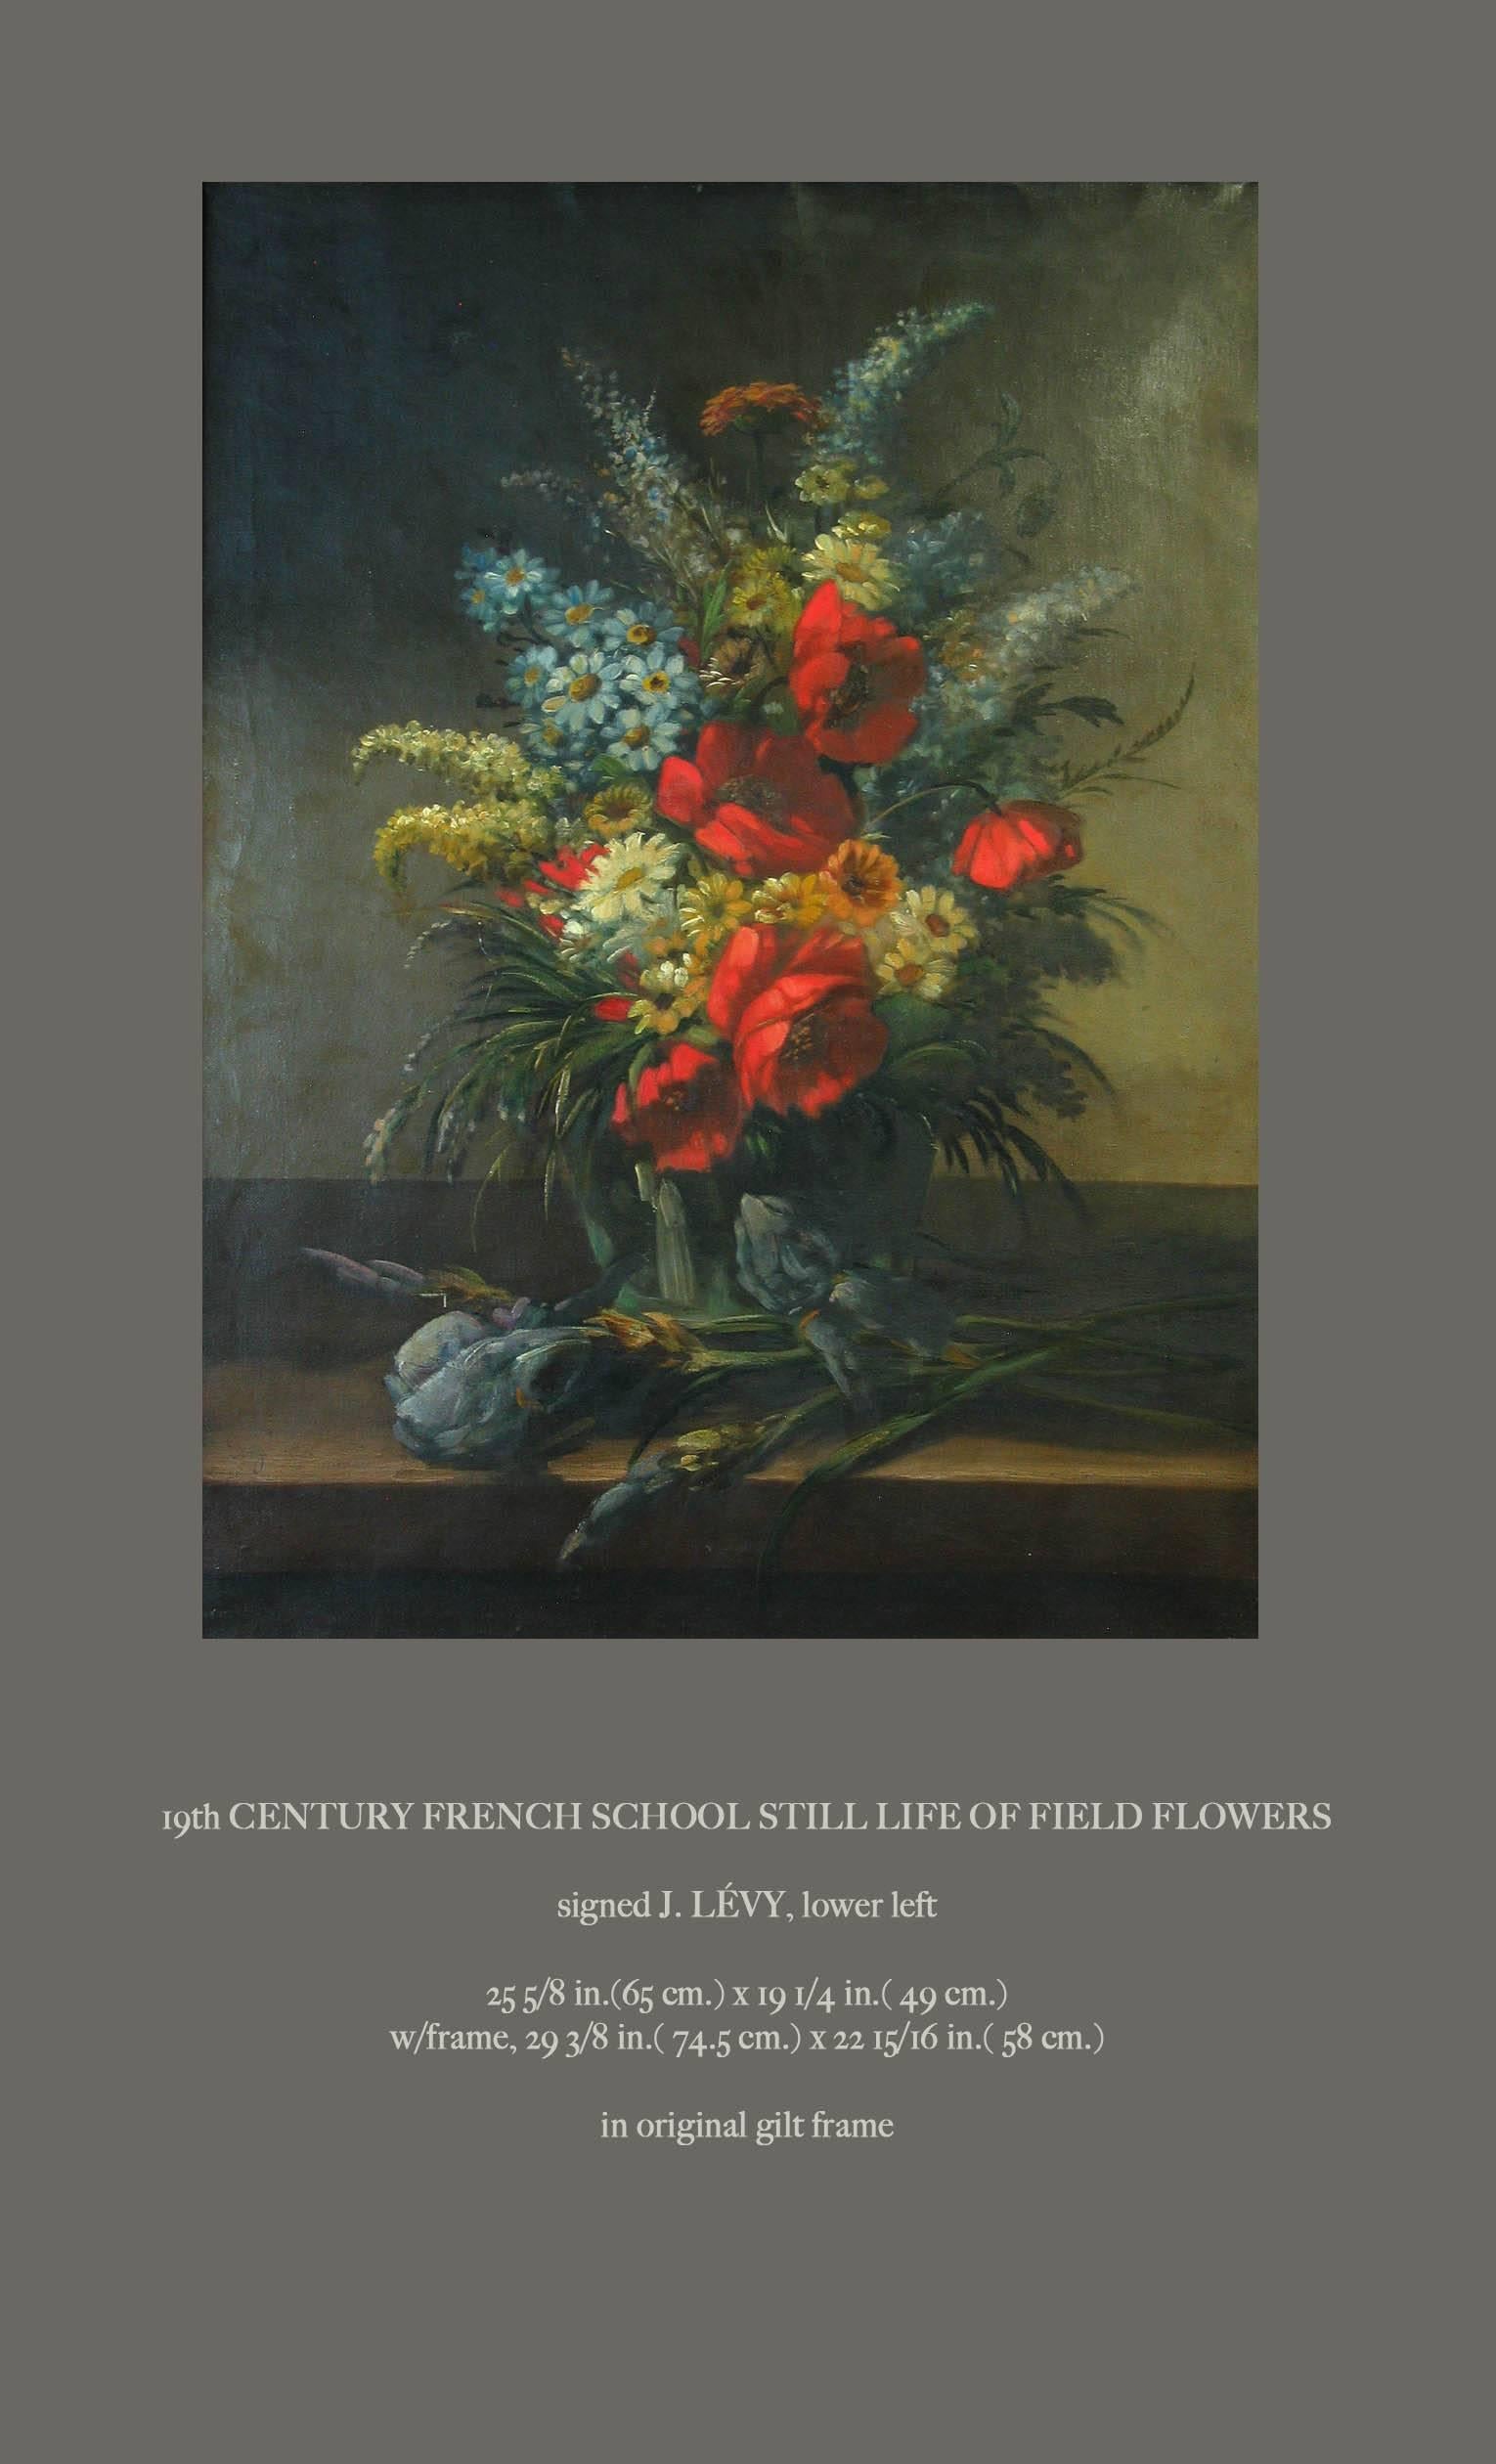 Ein farbenfrohes Stillleben mit Feldblumen aus der französischen Schule des 19
Signiert J. Levy, unten links.
Das Gemälde misst: 25 5/8